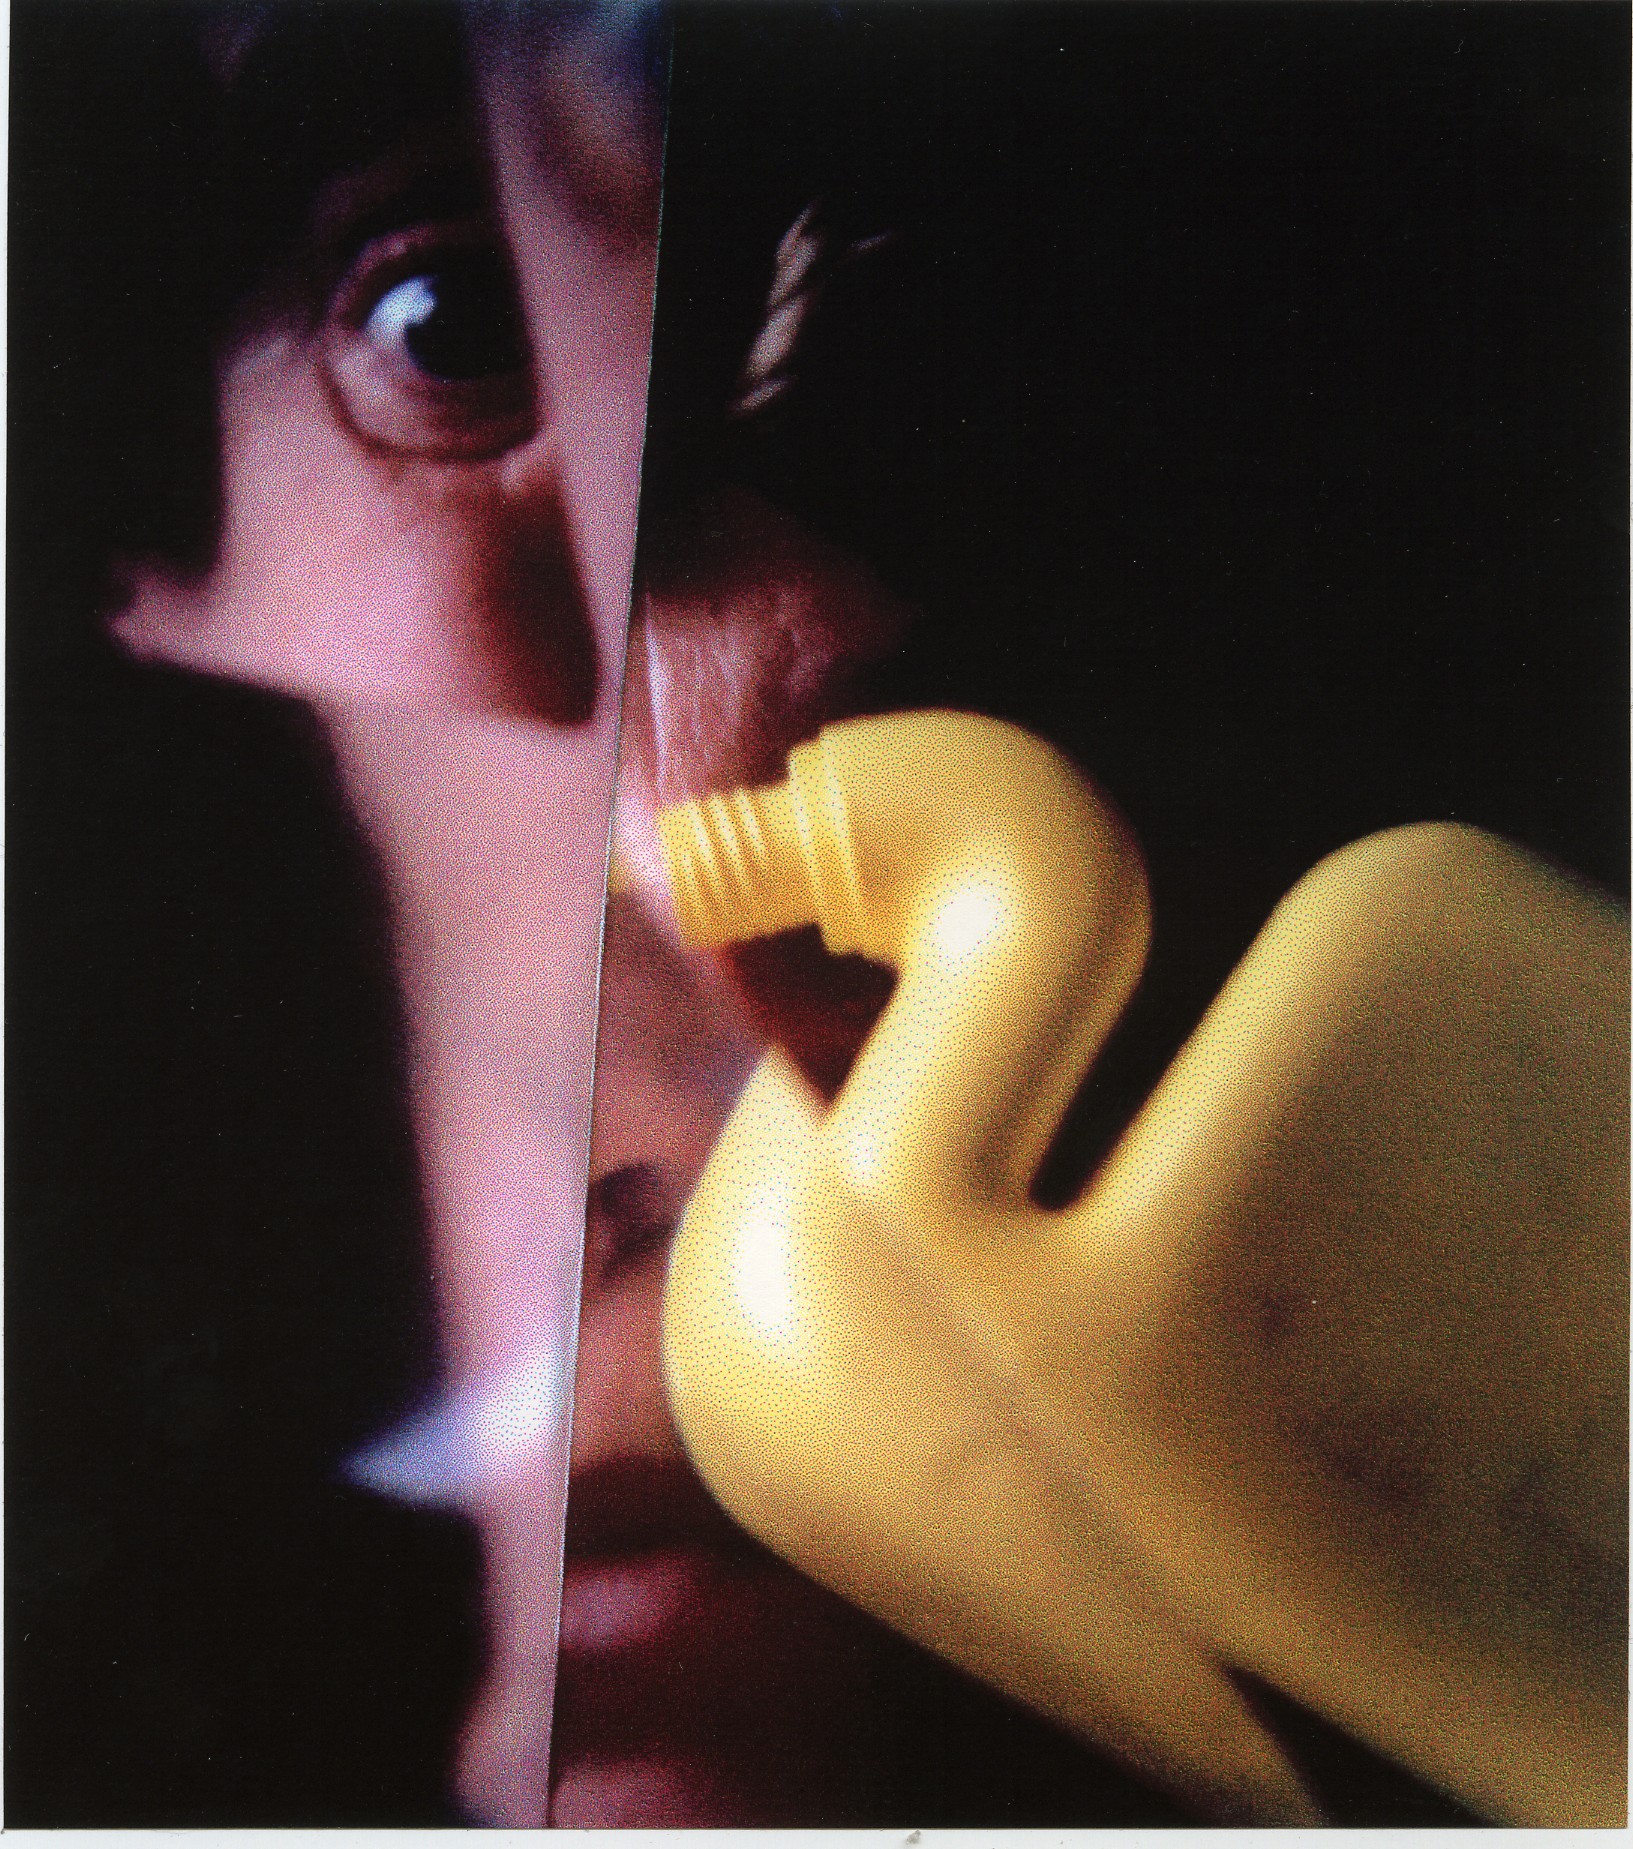 fragmentarische Fotografie eines Gesichts und einer gelben WC-Ente